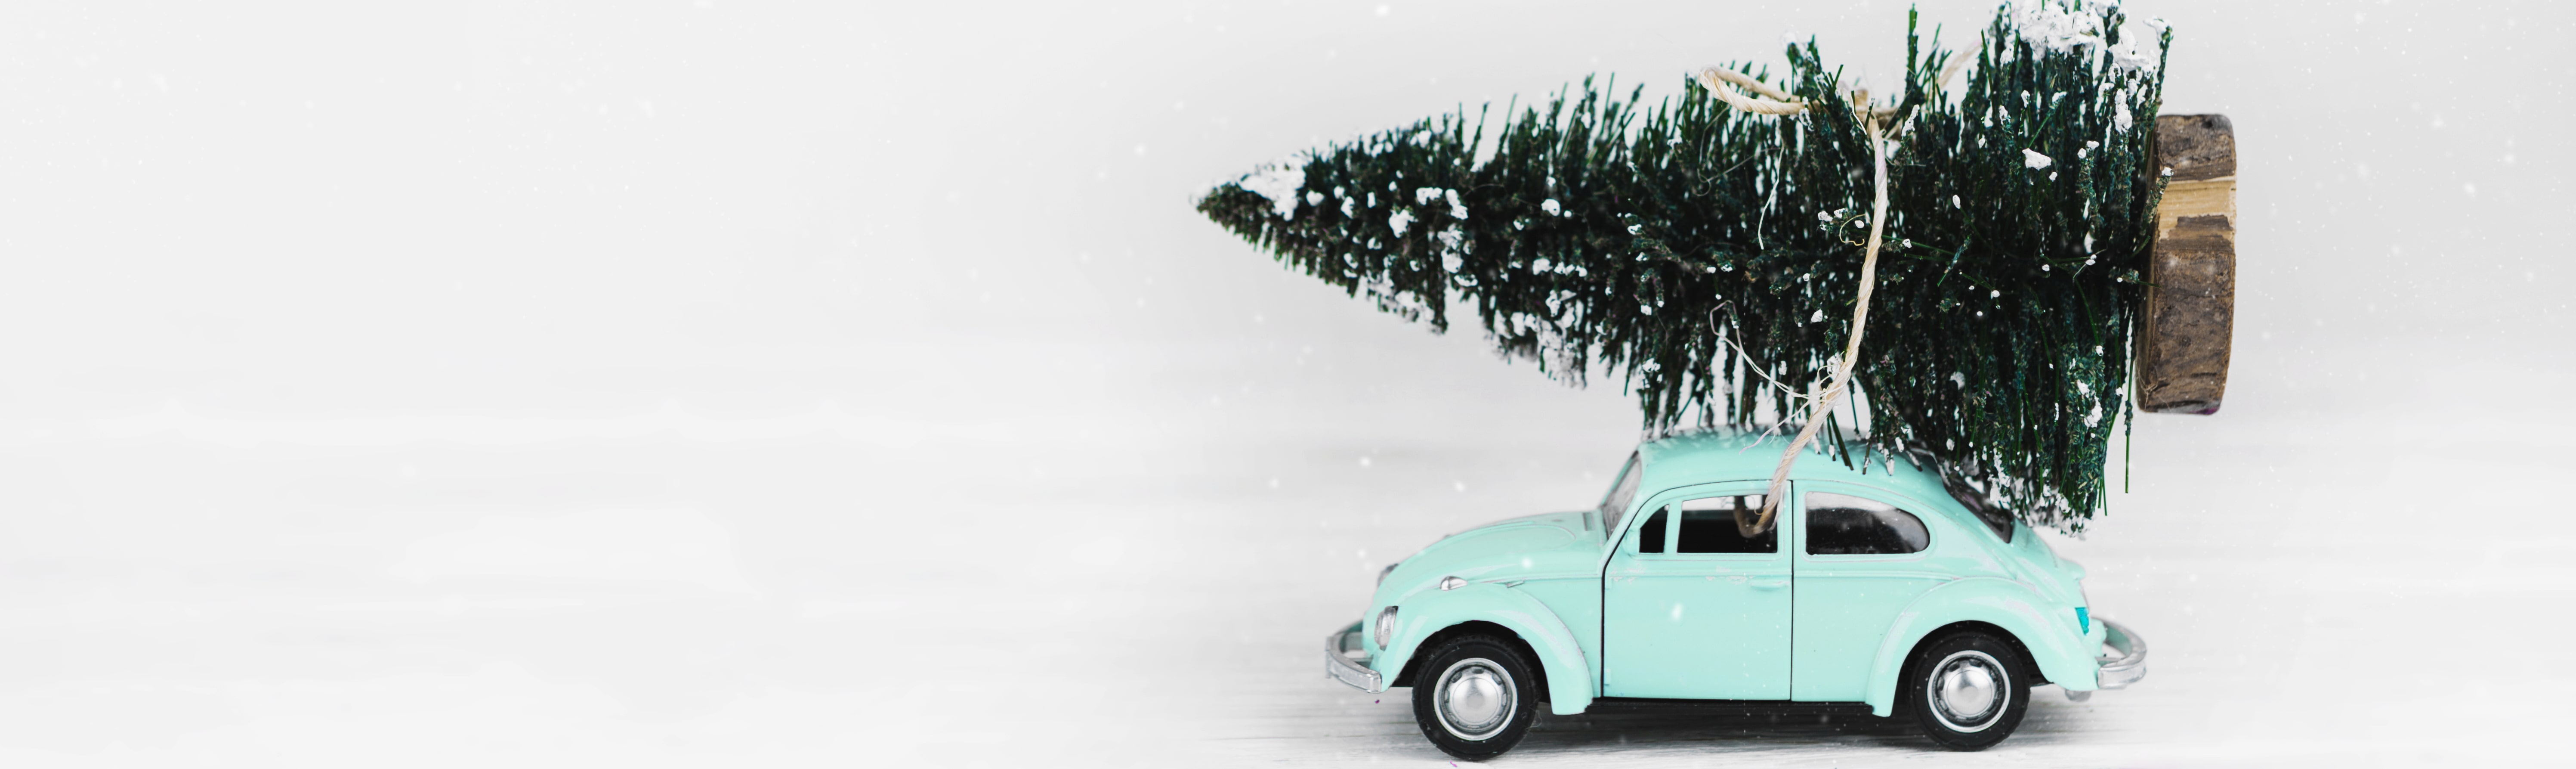 Kaufen Sie Schweizer Weihnachtsbaum Online Kostenlose Lieferung Zu Ihnen Nach Hause